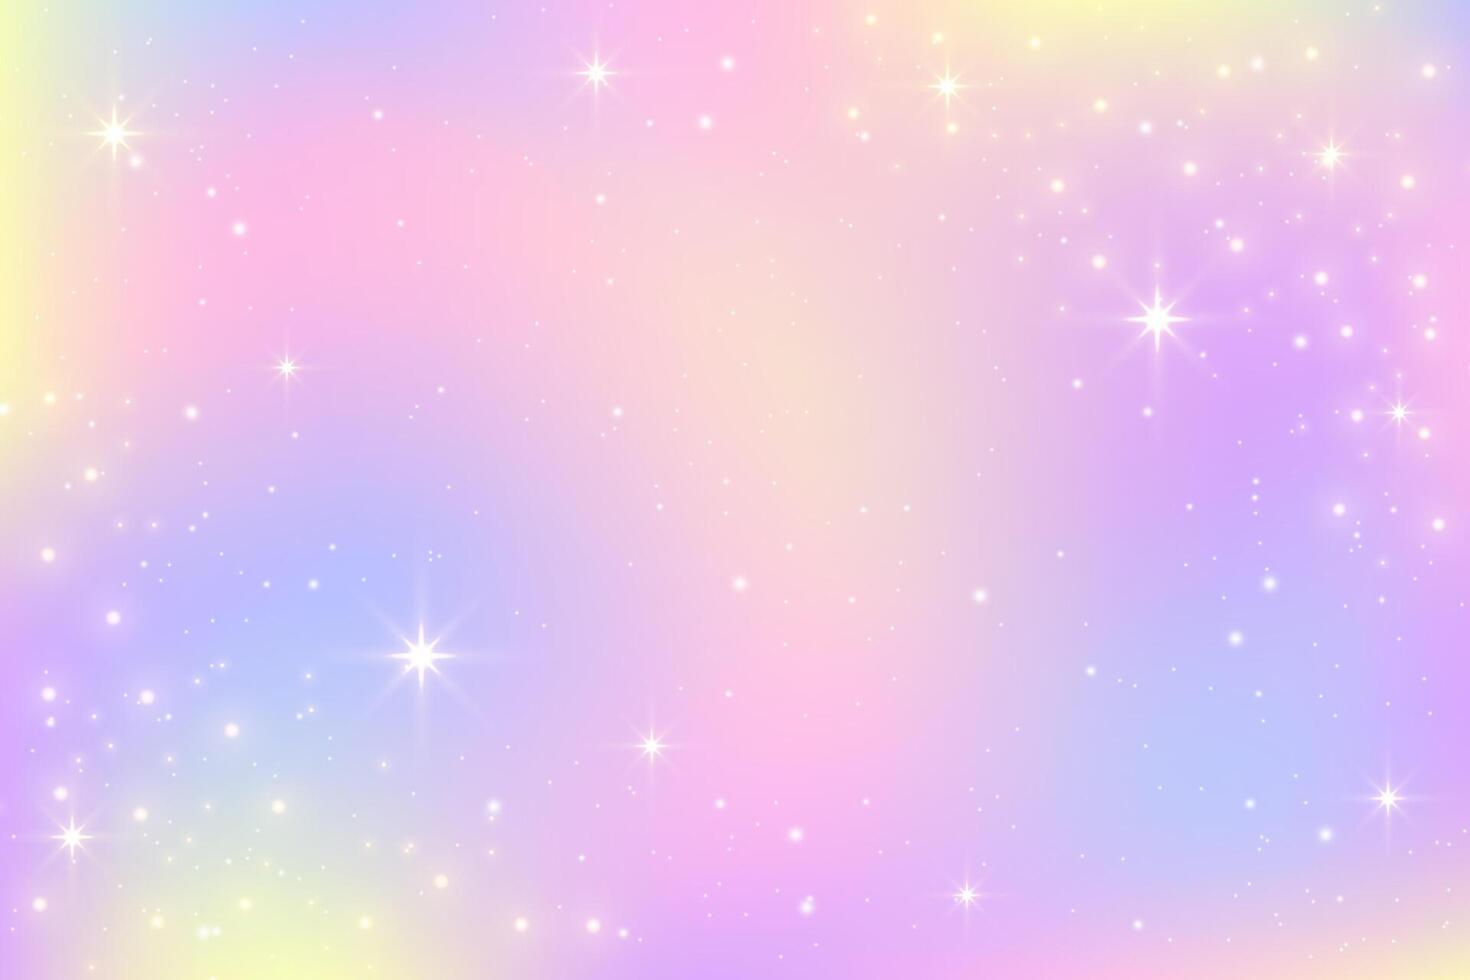 kleur helling achtergrond. licht regenboog pastel lucht. abstract iriserend structuur met sparkles en sterren. zacht roze en Purper eenhoorn dromerig behang met spectrum gradatie. vector